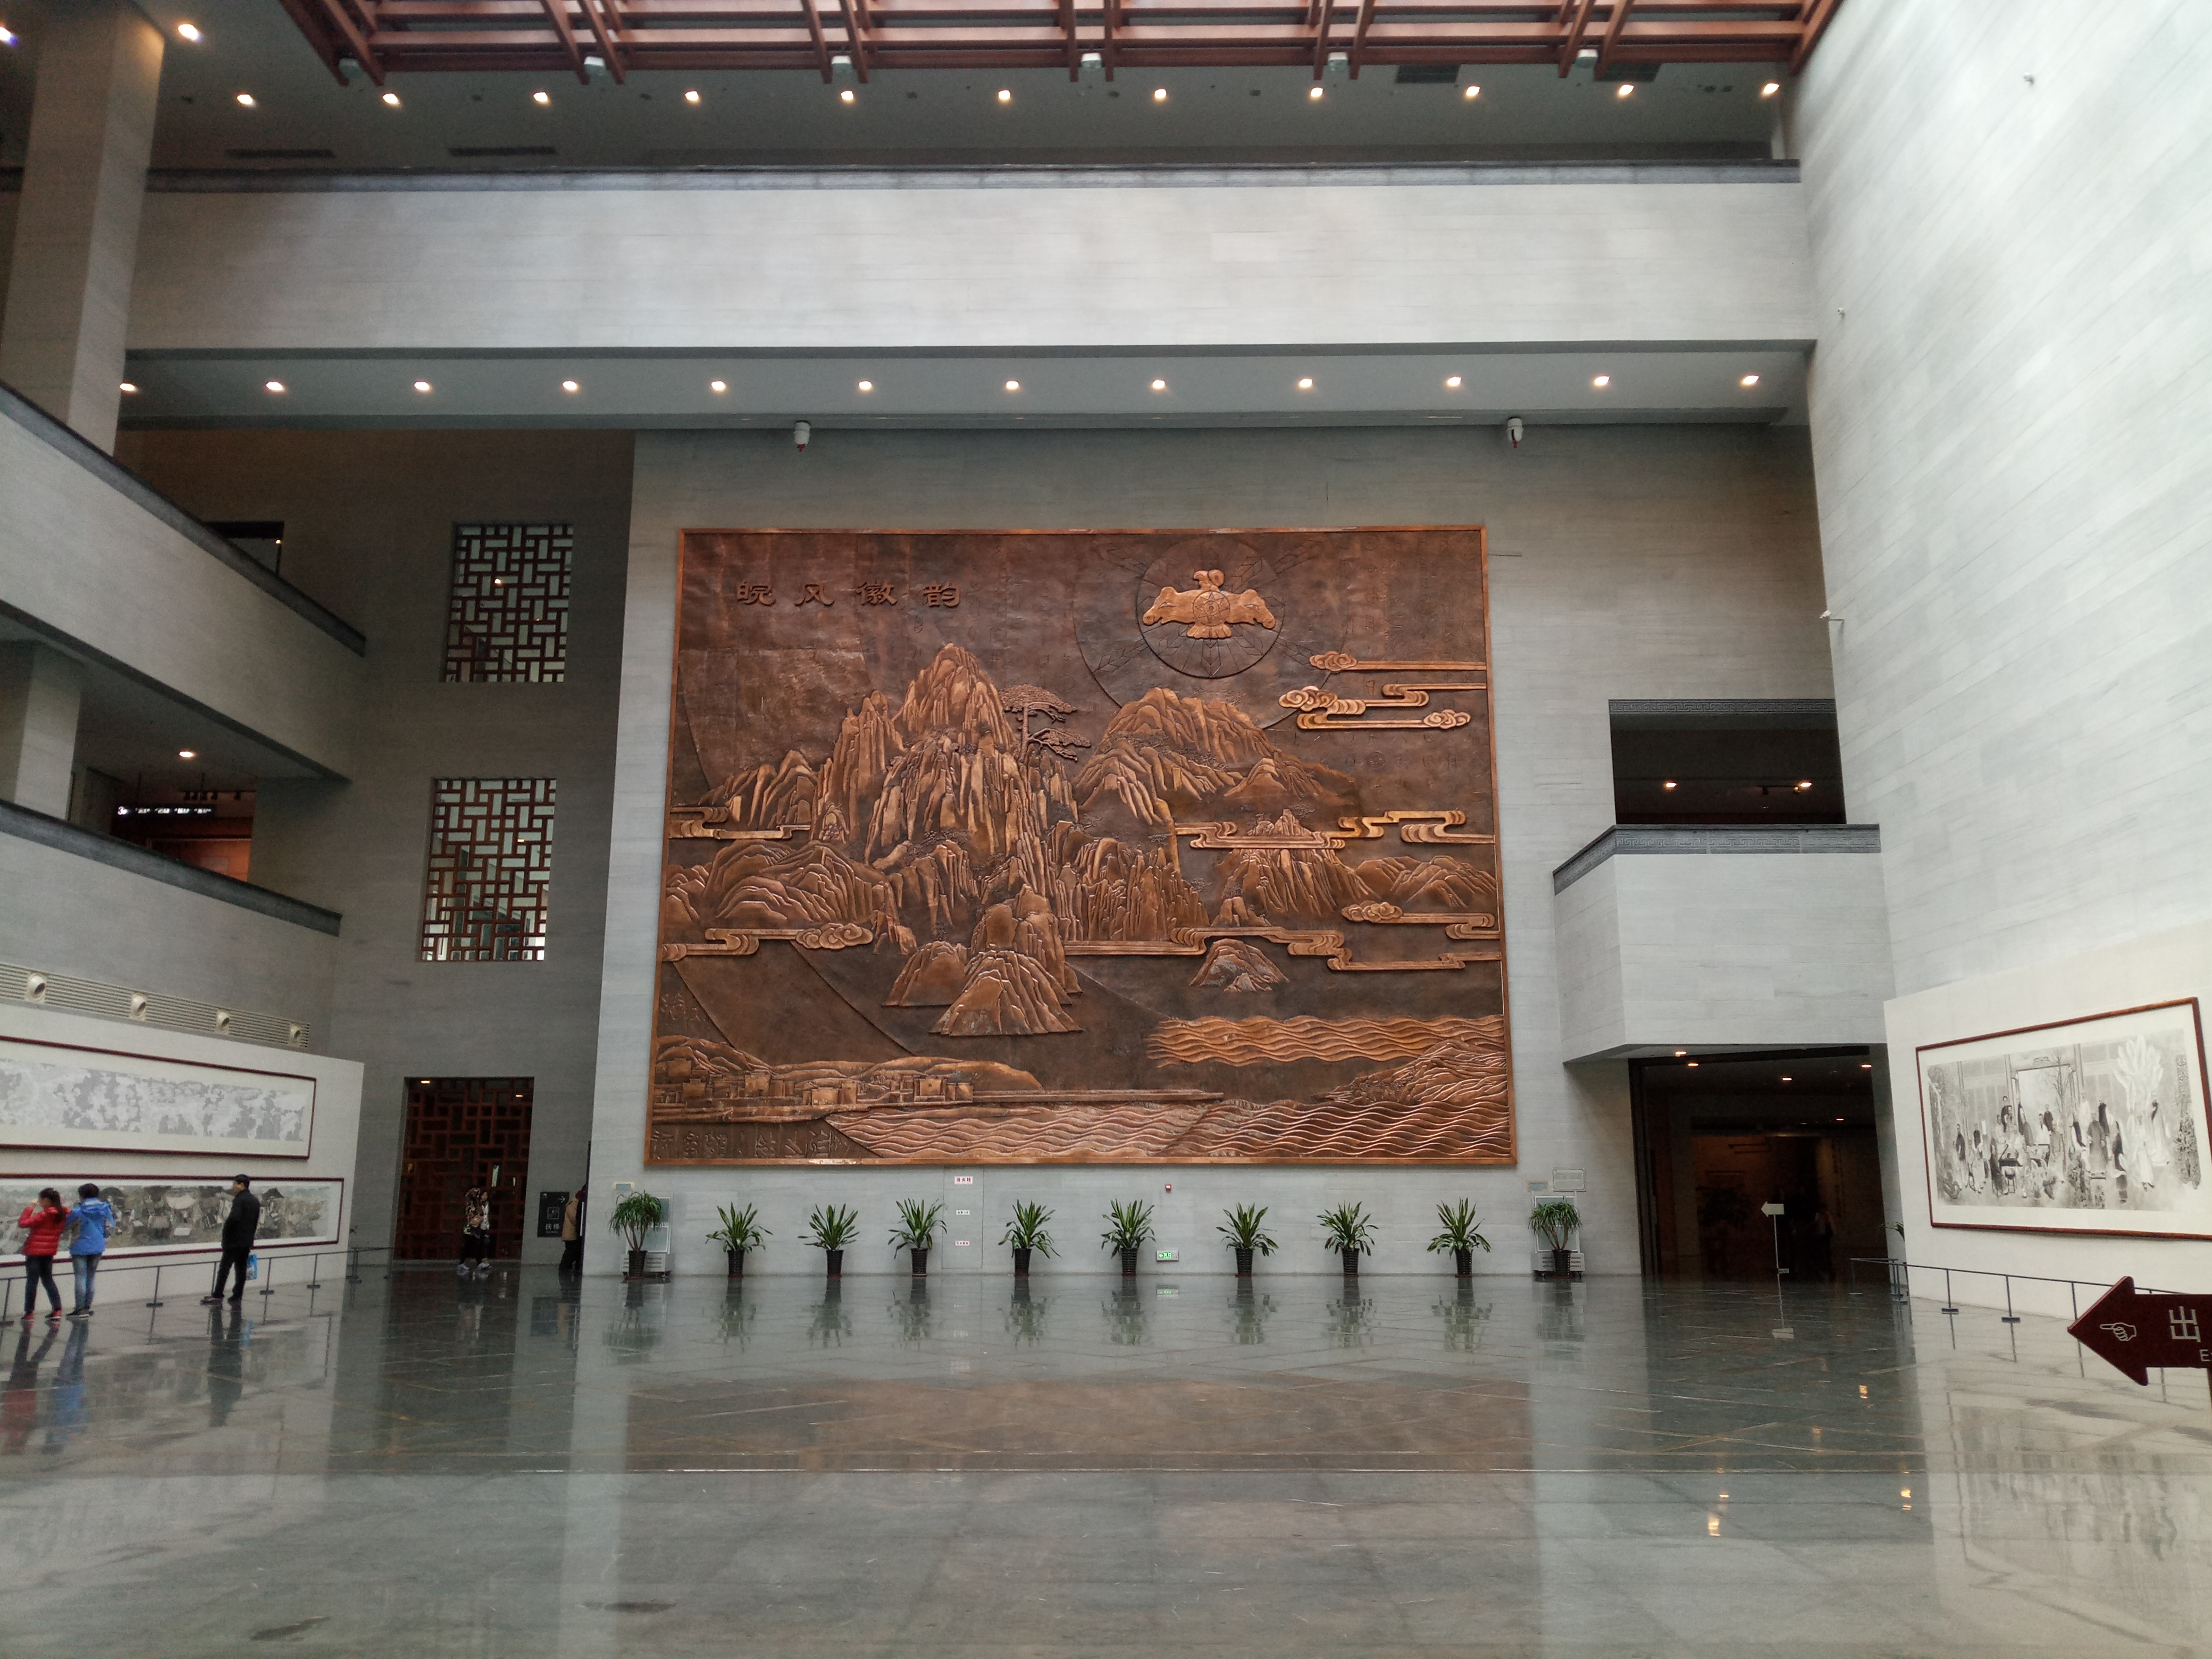 安徽省博物馆,进馆凭身份证免费参观,这个是新馆,修的很气派,和地质